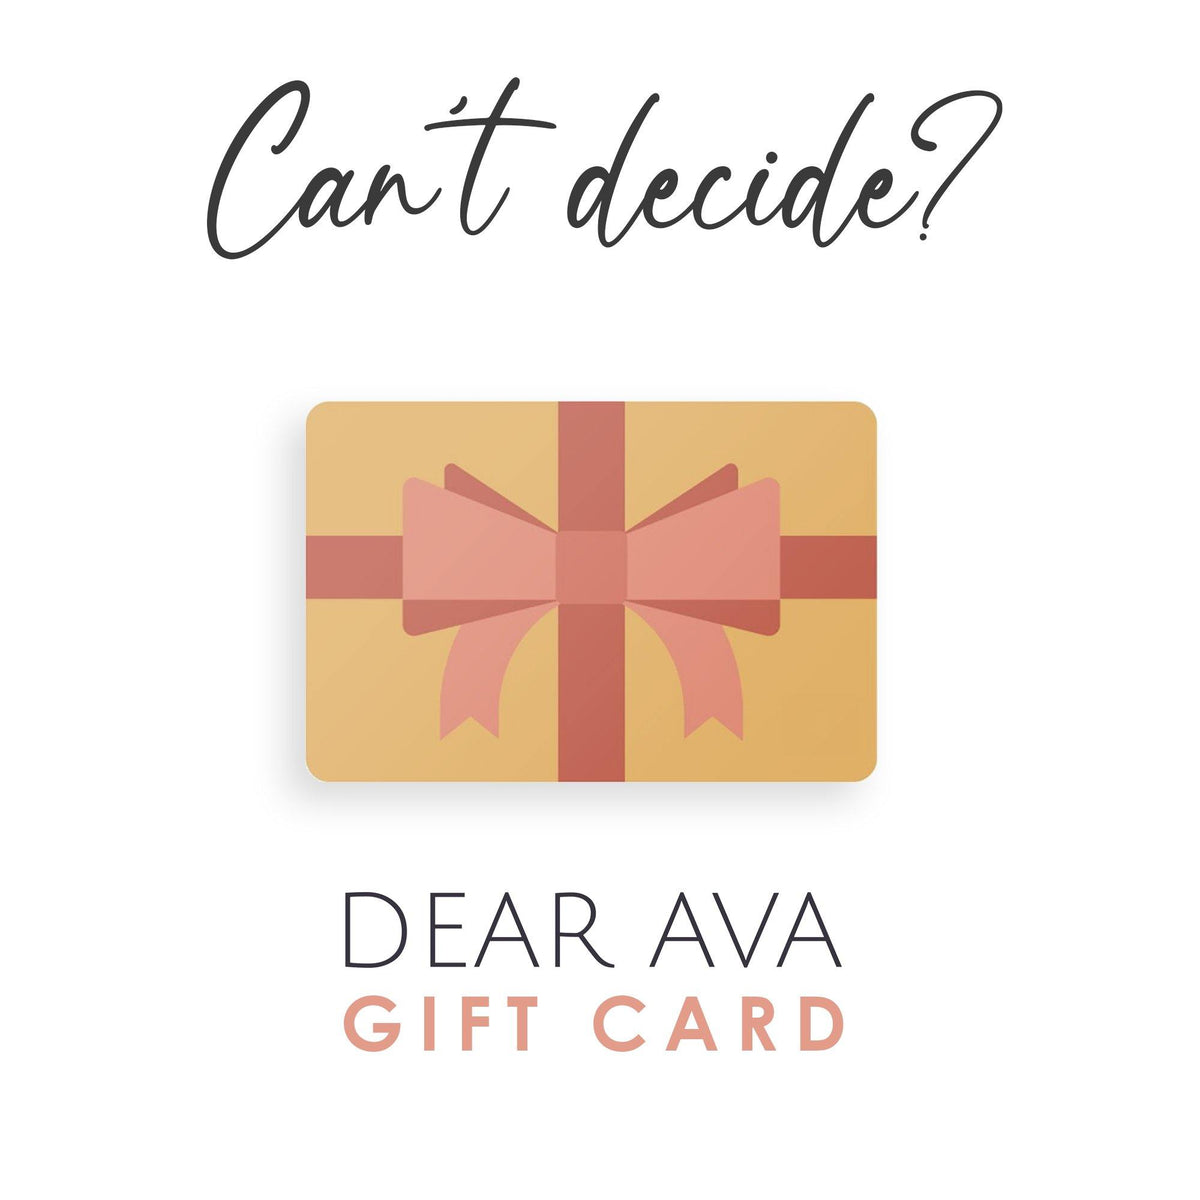 Dear Ava Digital Gift Card - Dear Ava